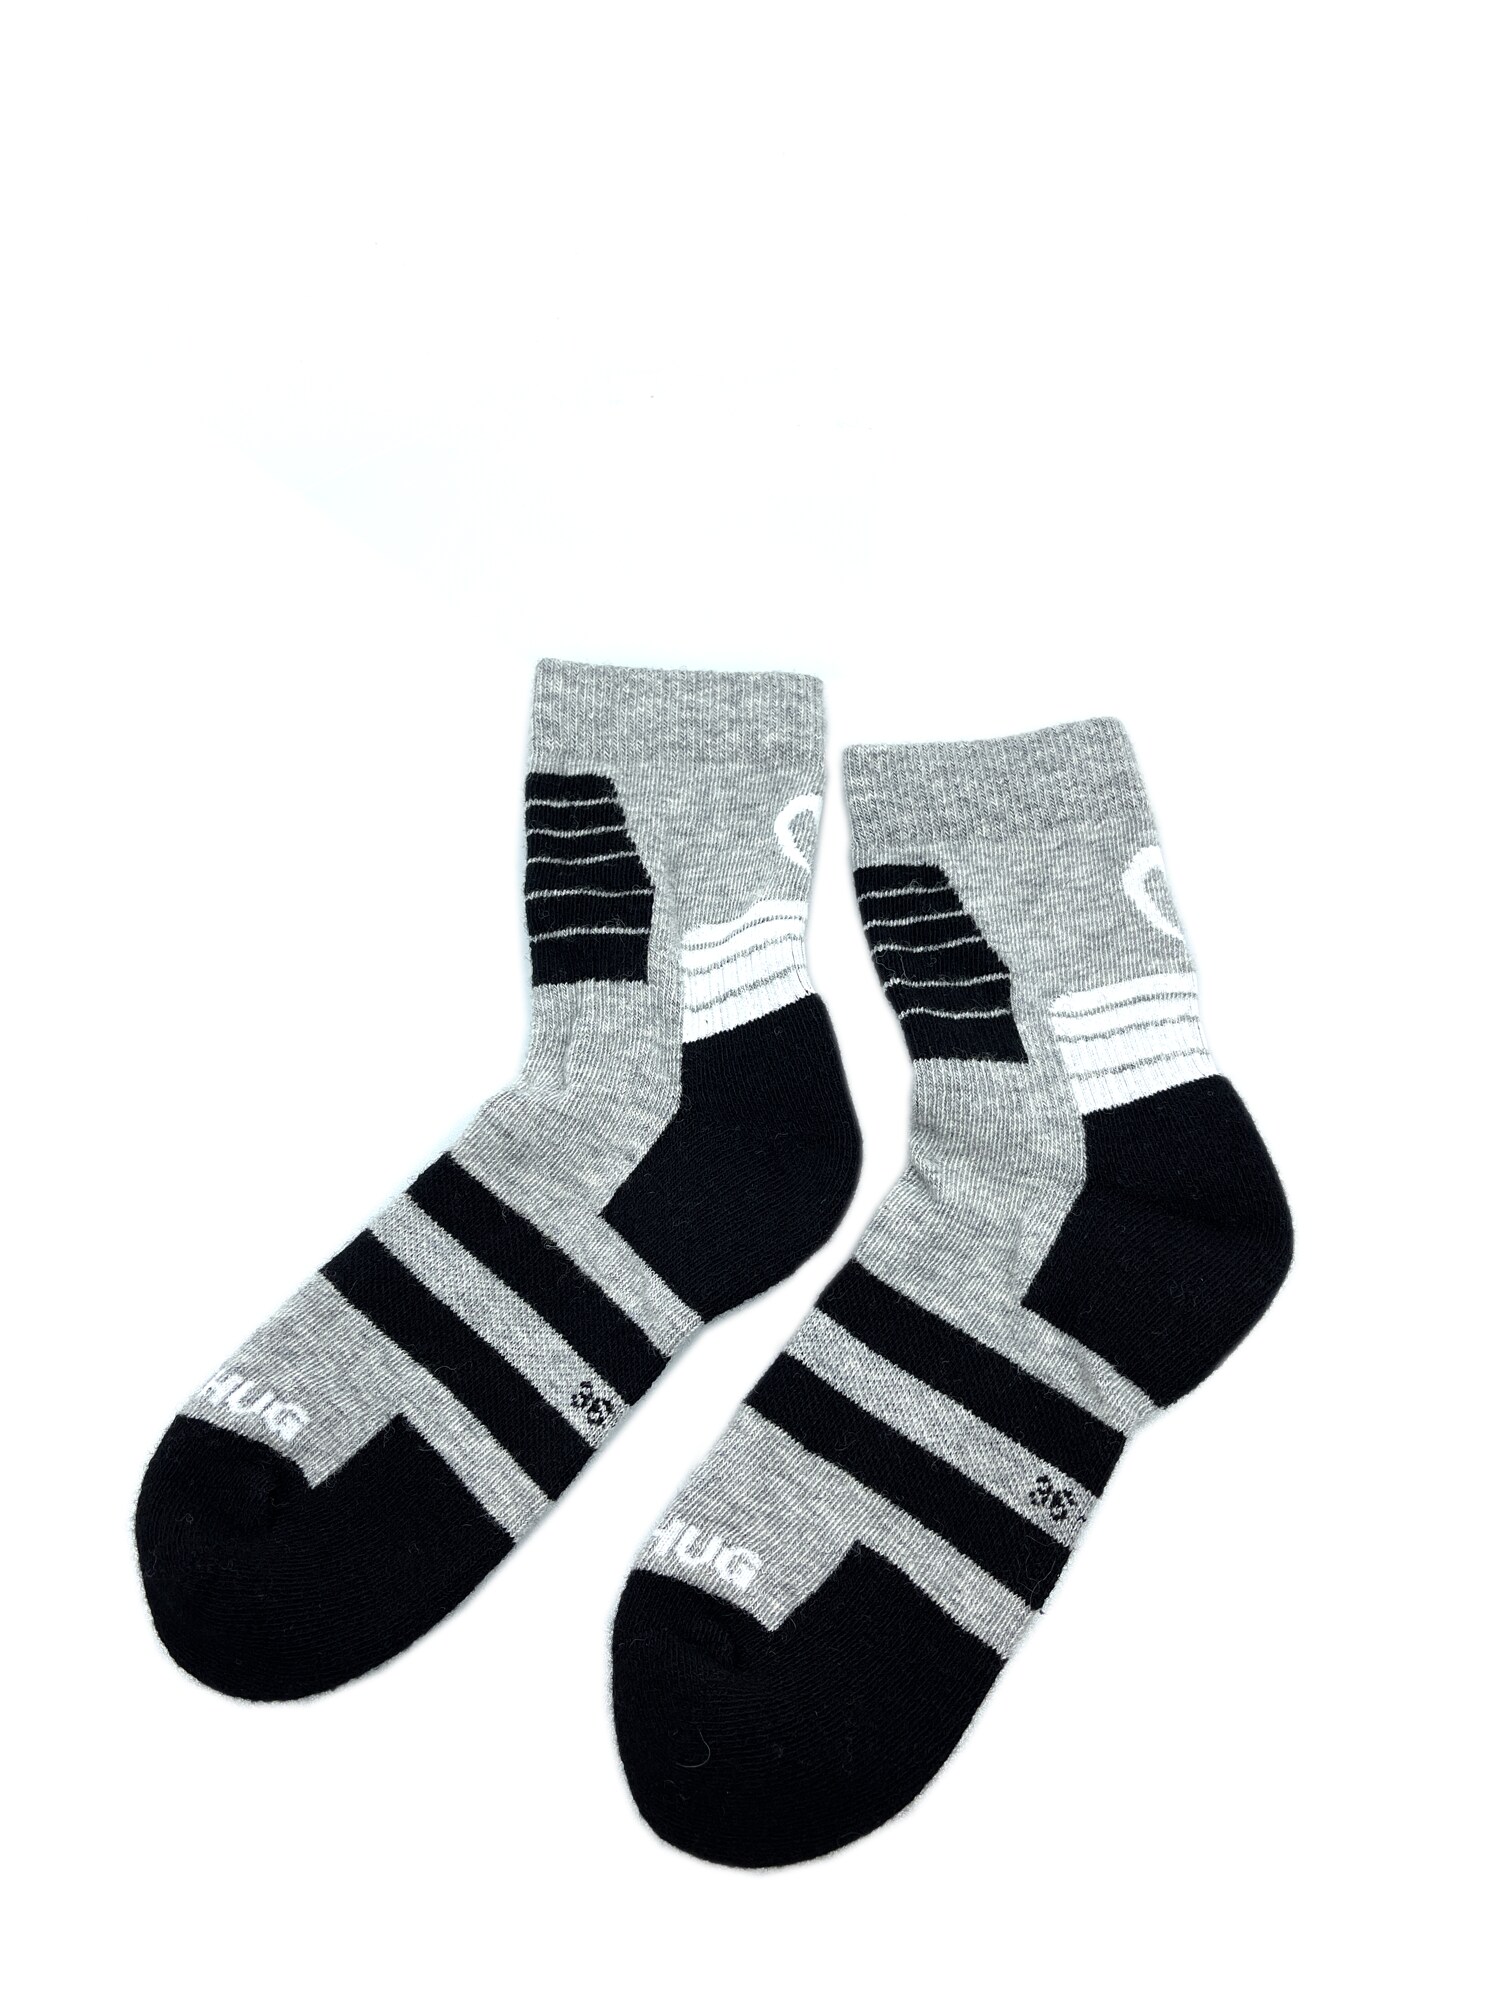 Northug Spurt Technical Wool XC sokker, Unisex